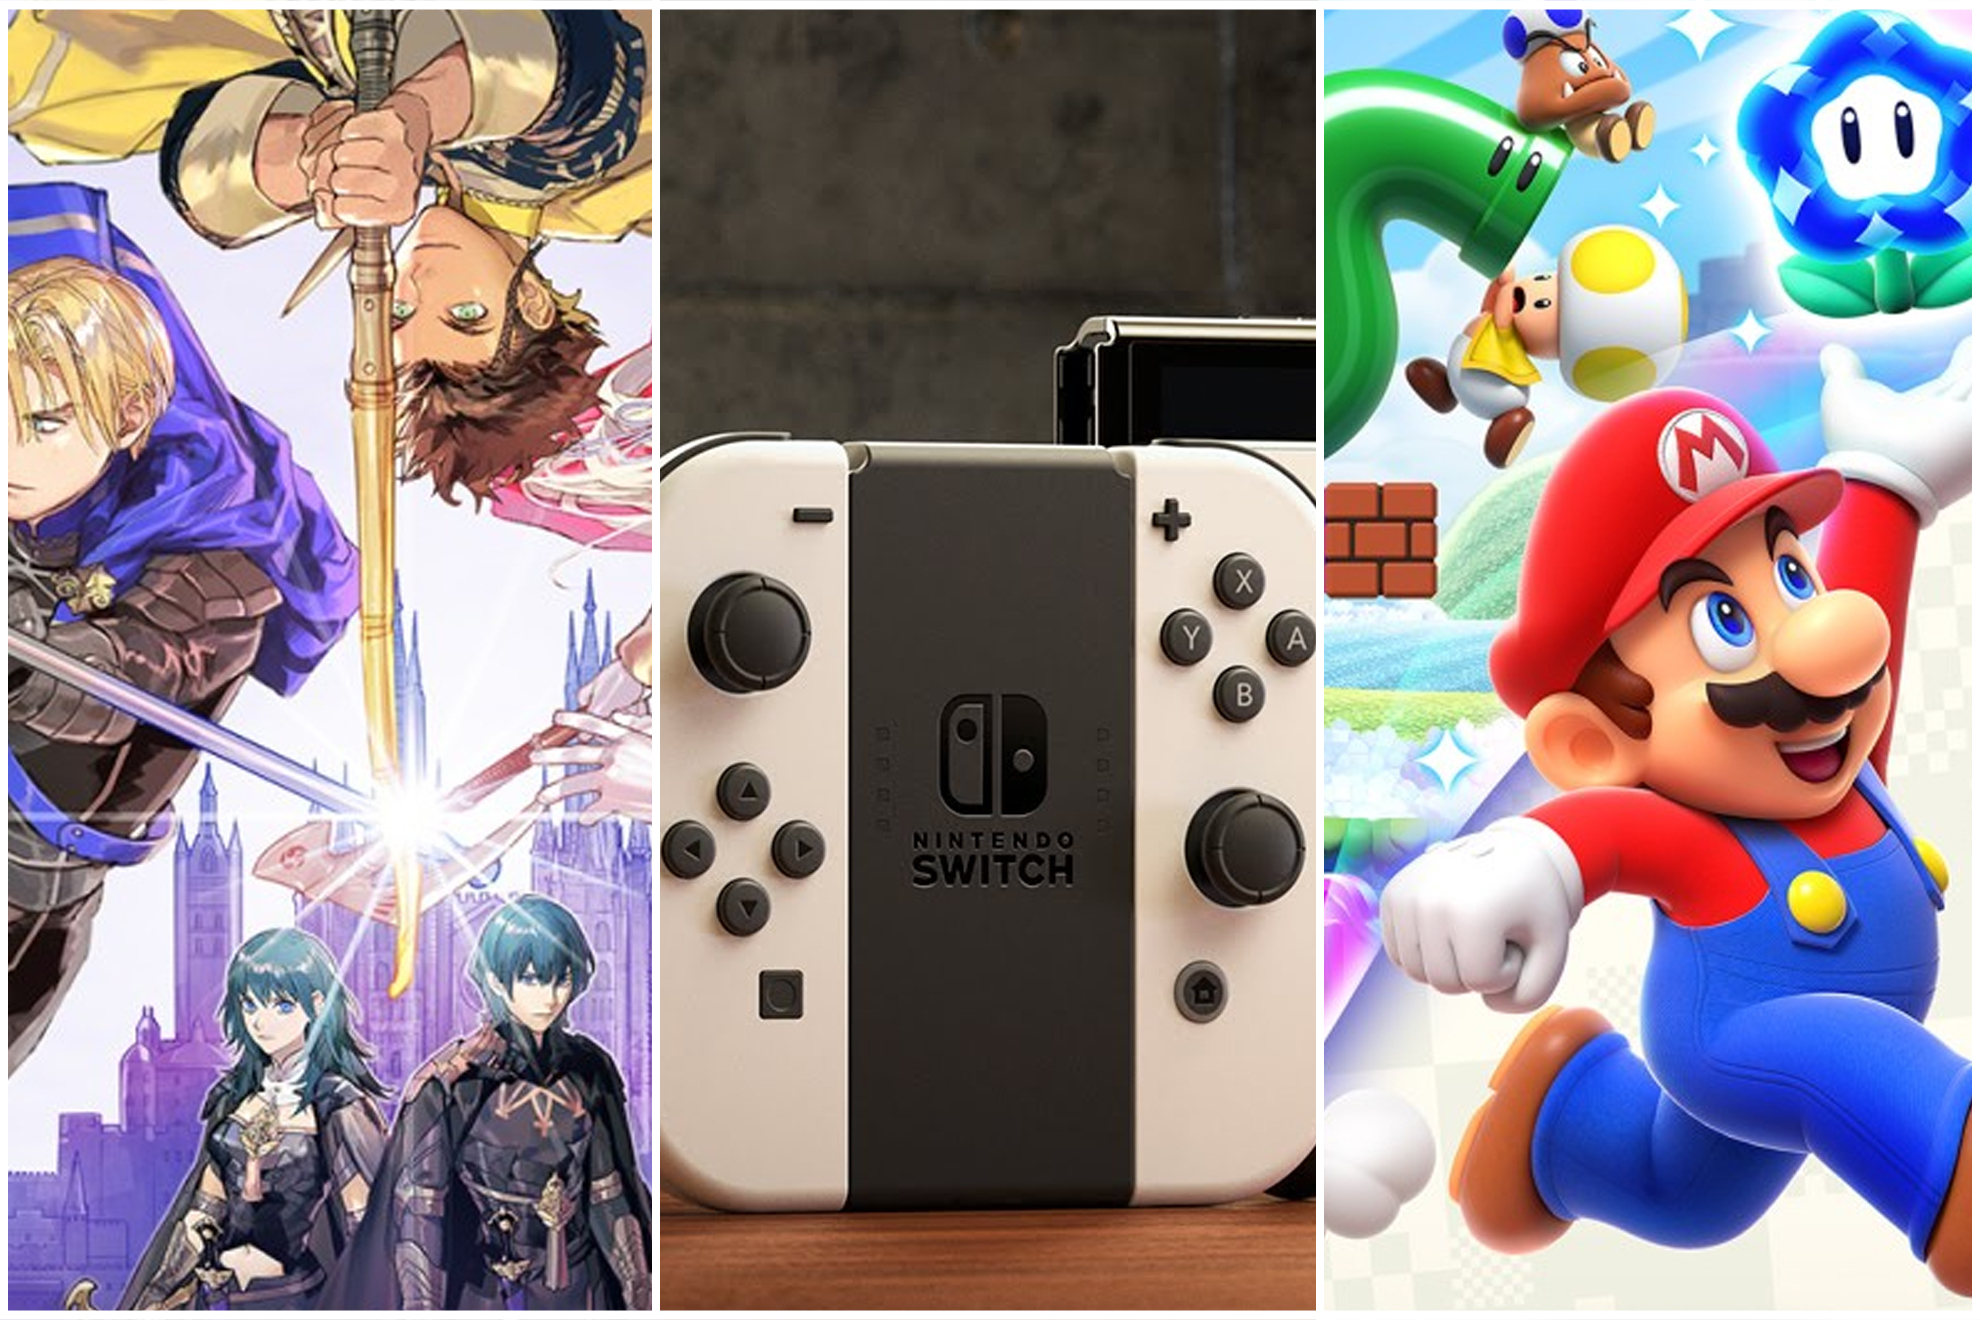 Los mejores juegos exclusivos de Nintendo Switch